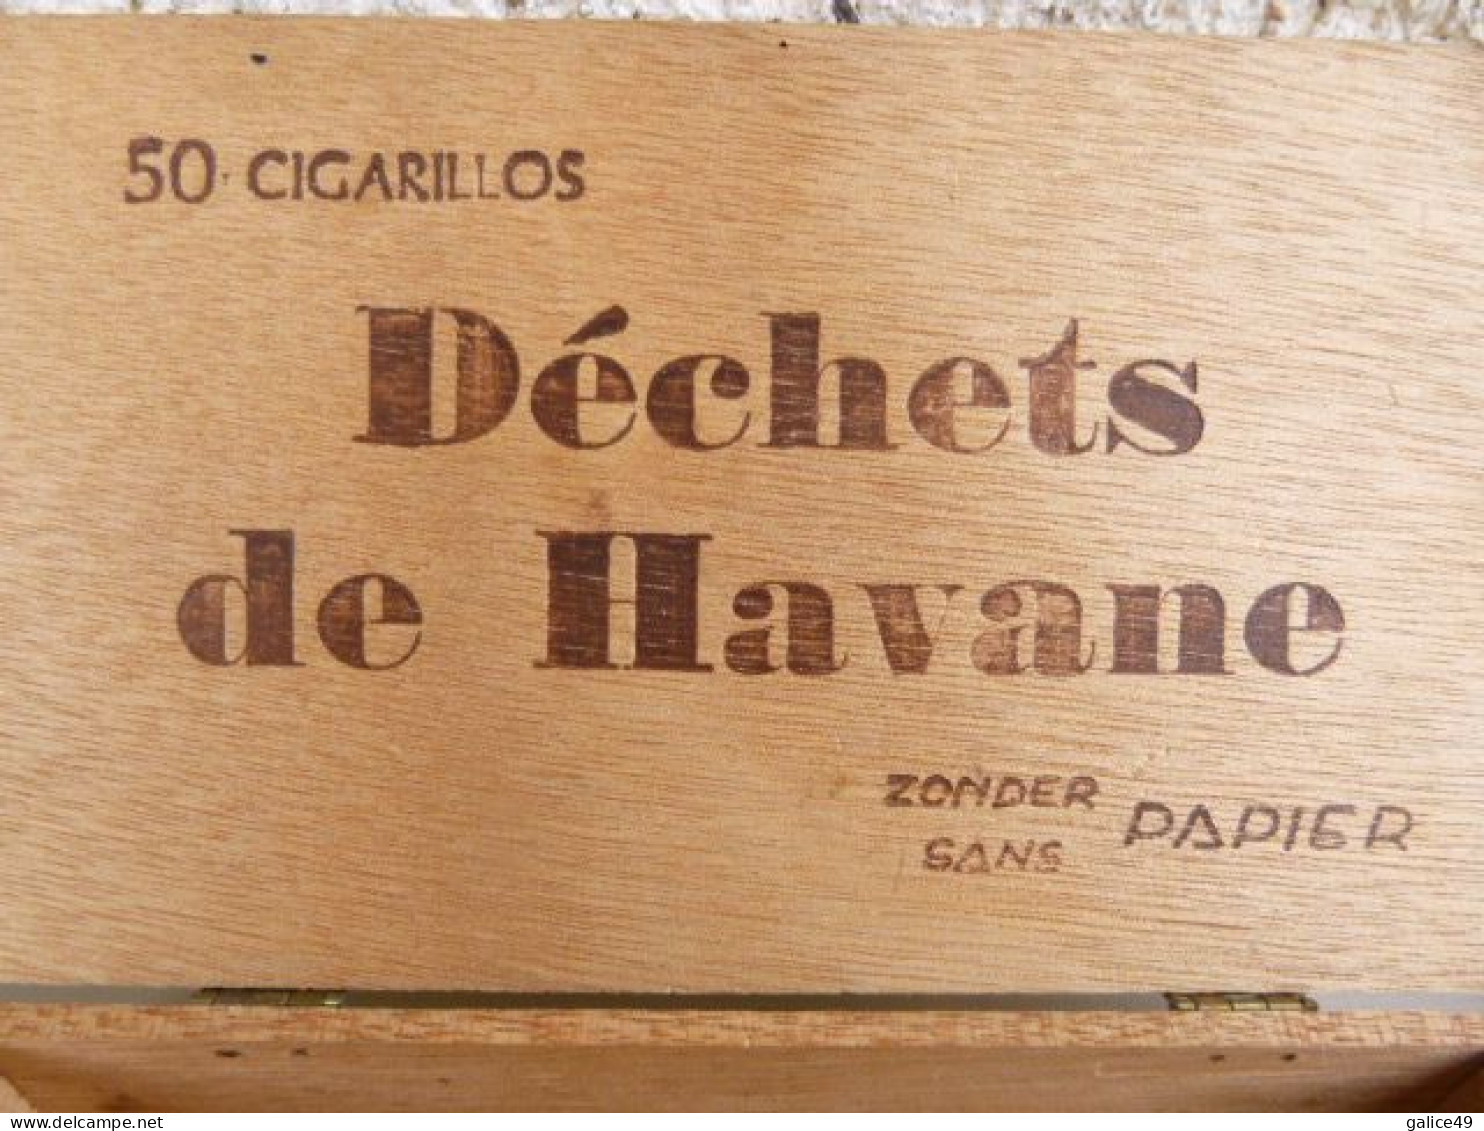 Boite En Bois Vide Déchets De Havane - Other & Unclassified